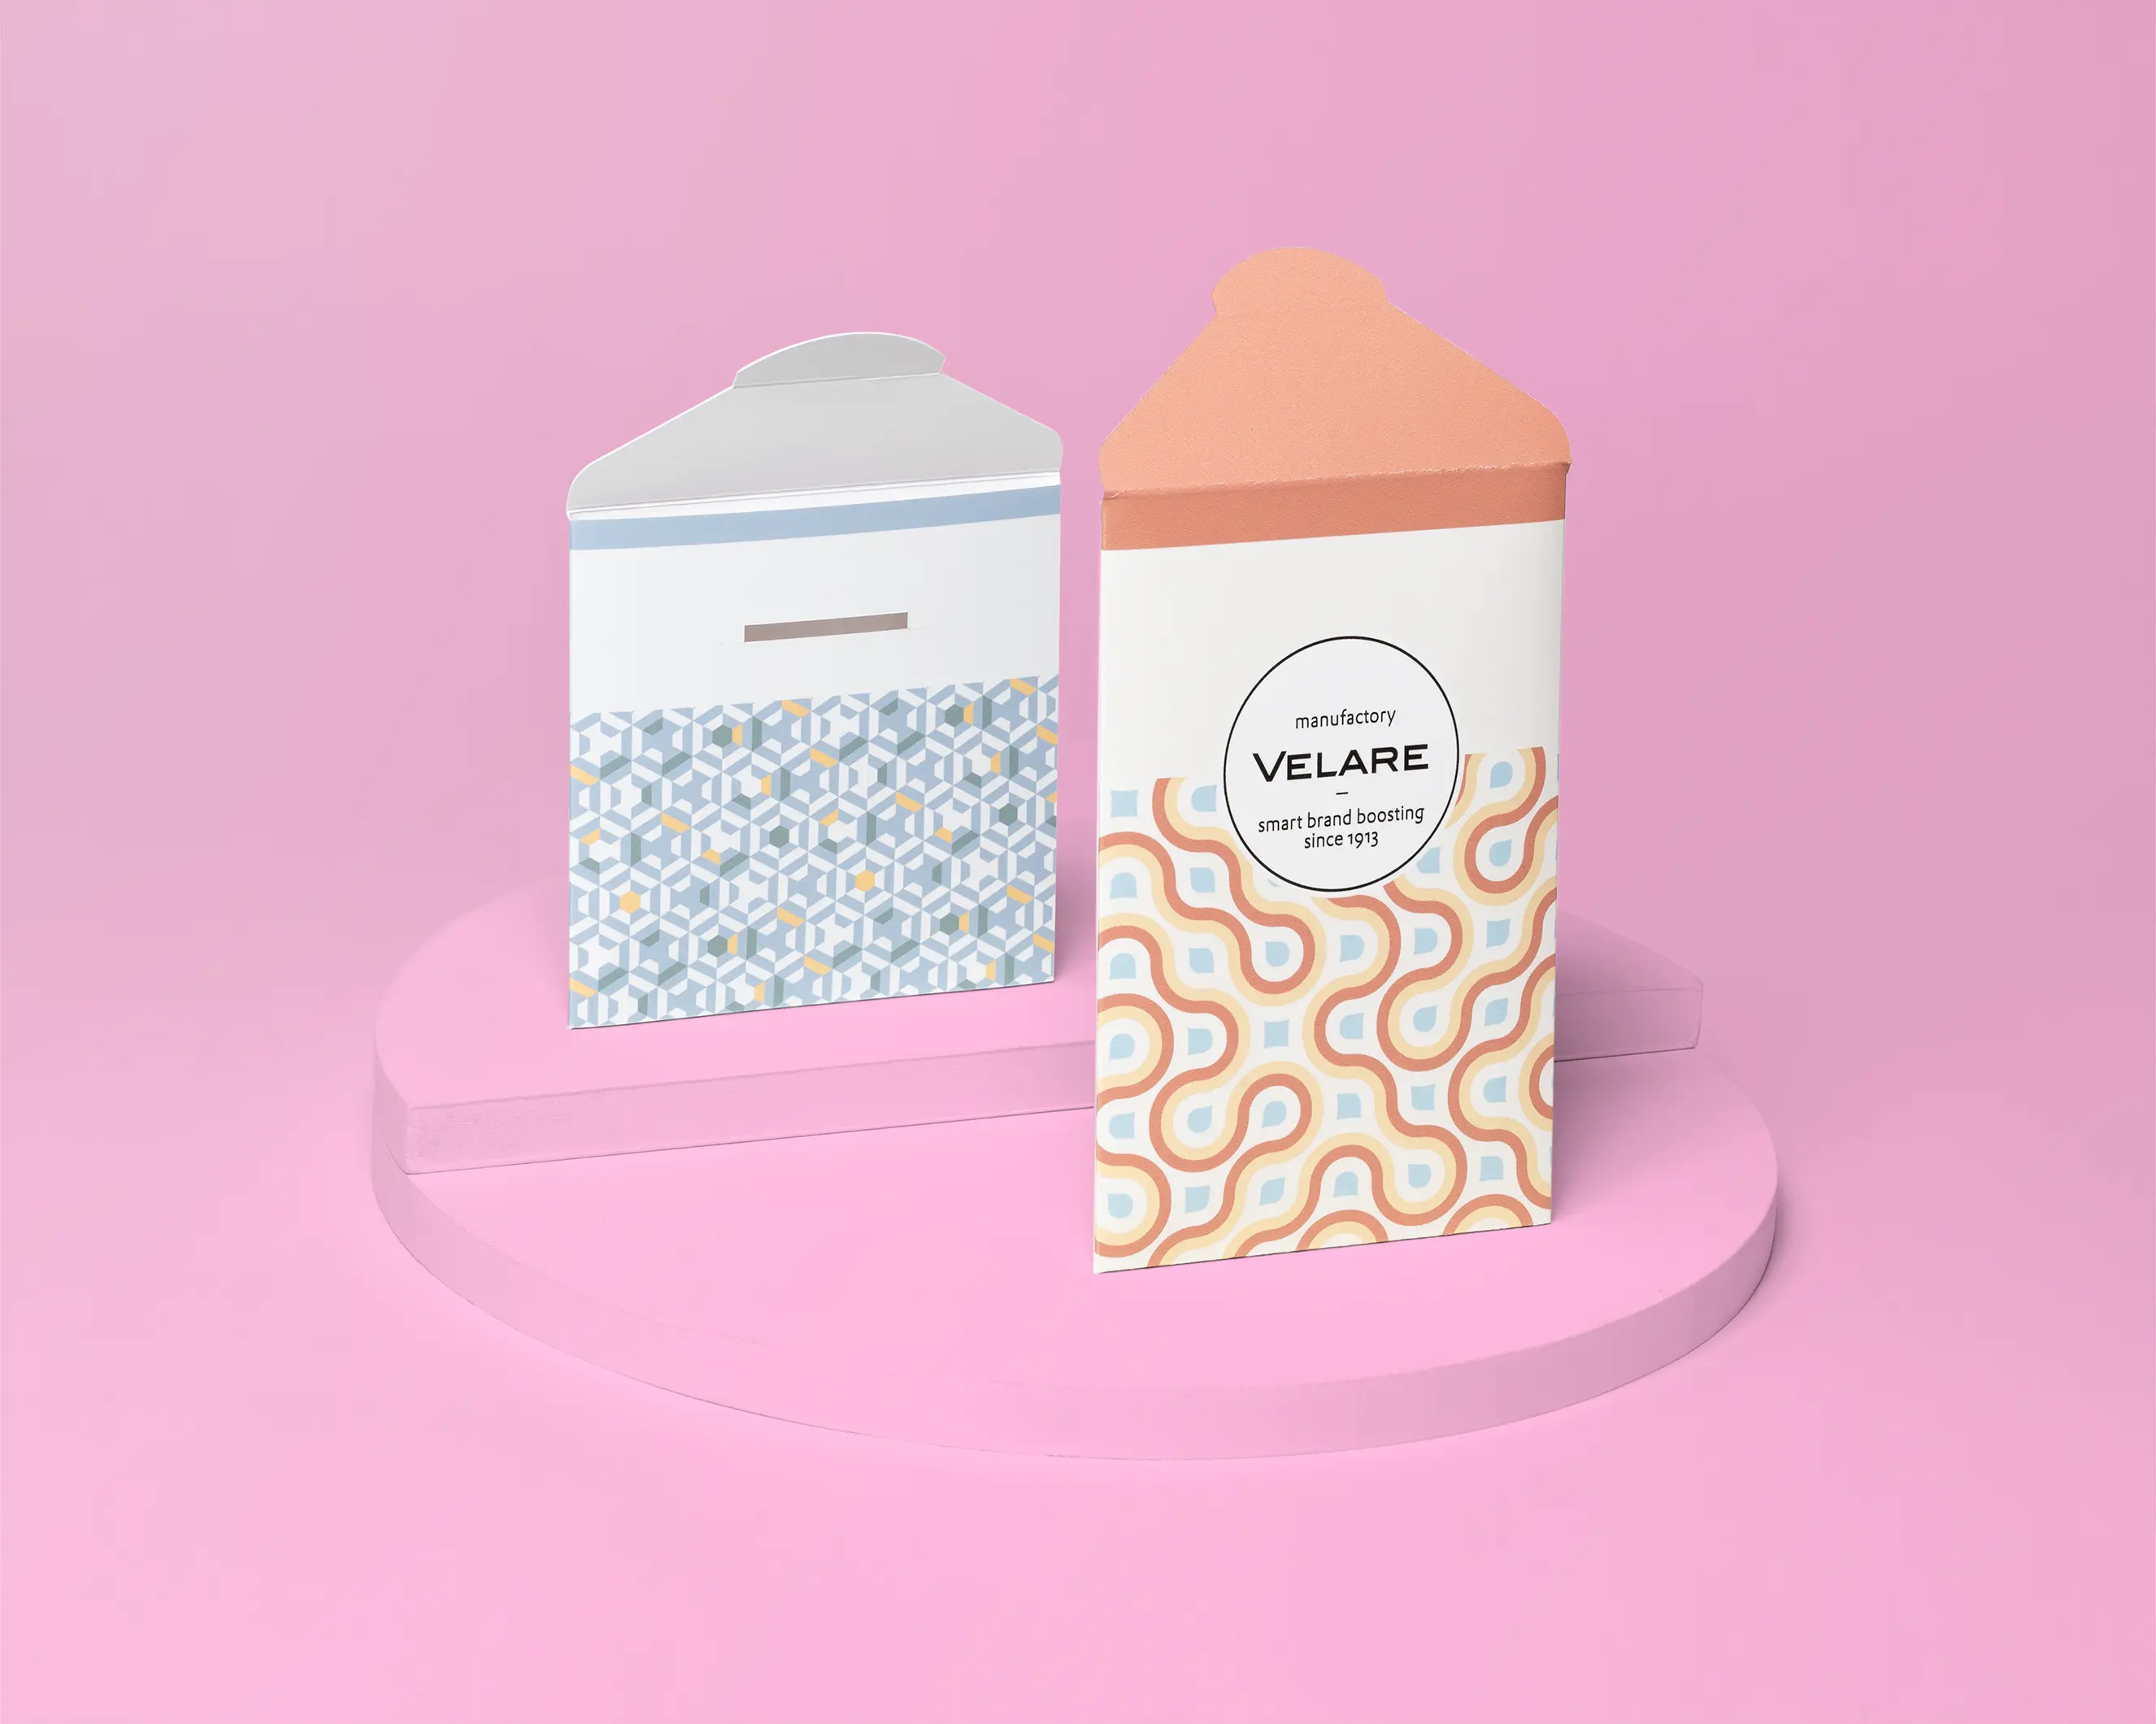 Kartenhülle mit Verschluss, zwei Verpackungen, eine von vorne und eine von hinten, auf dem Podest, pinker Hintergrund